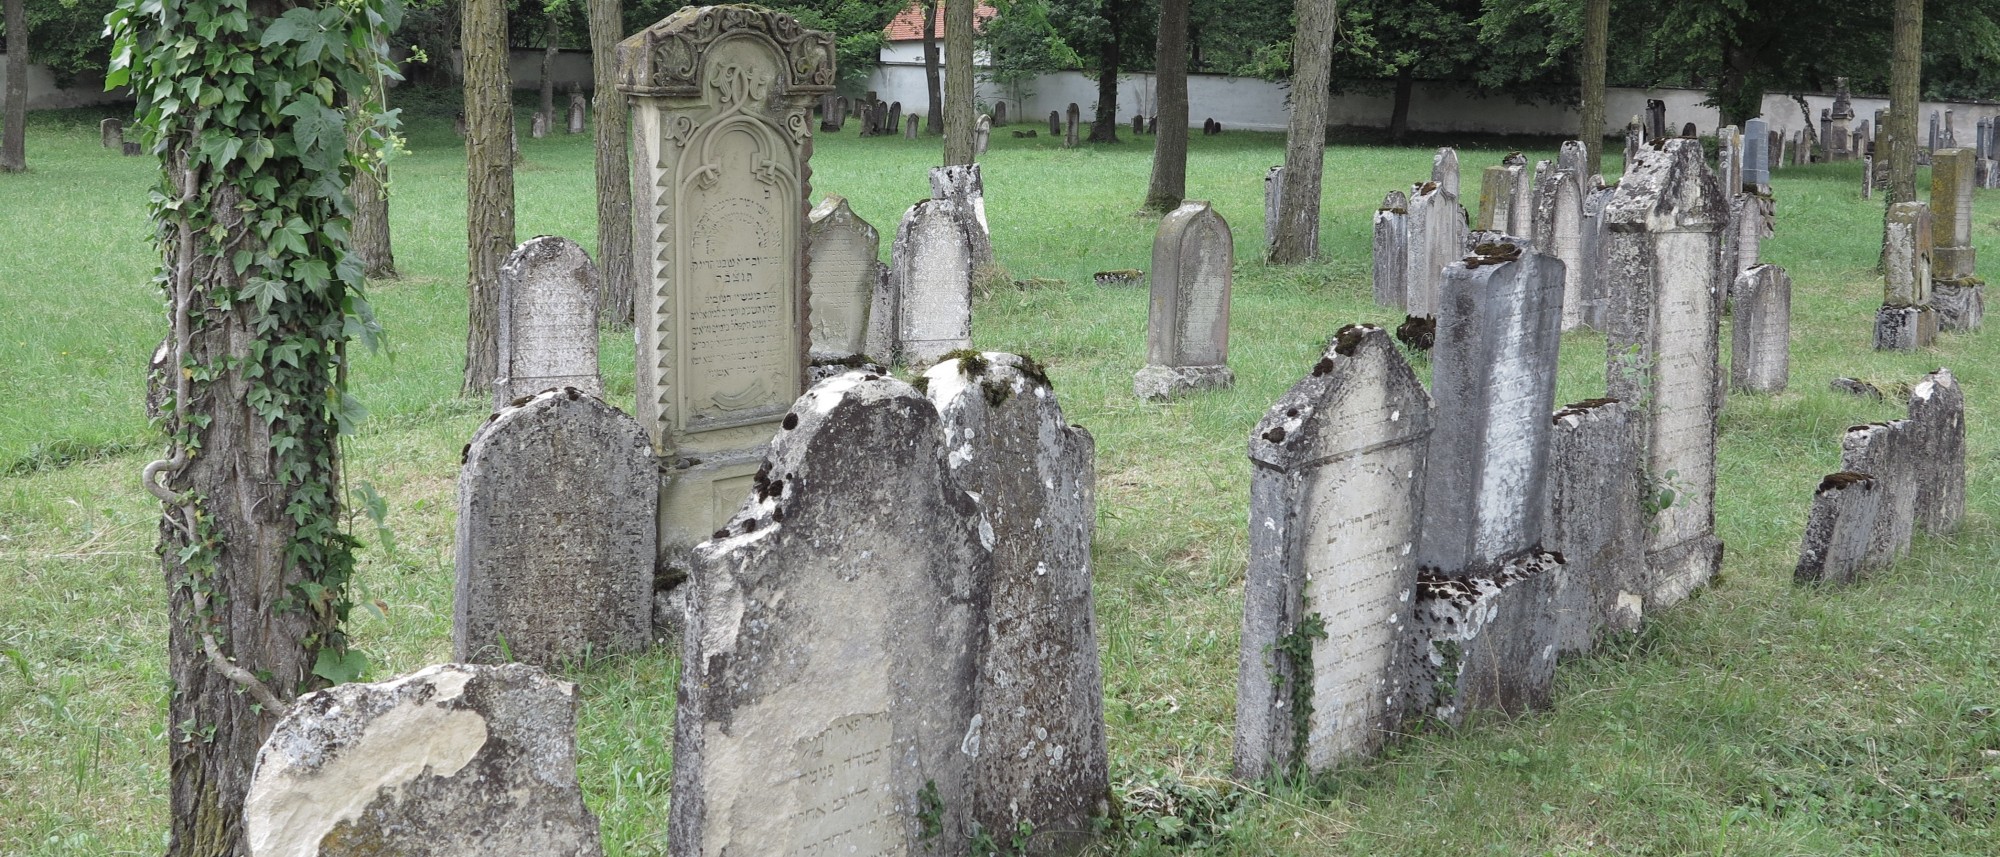 Grabsteine mit hebräischen Inschriften auf dem Friedhof in Harburg. Führt zur Unterseite &quot;Harburg&quot;.